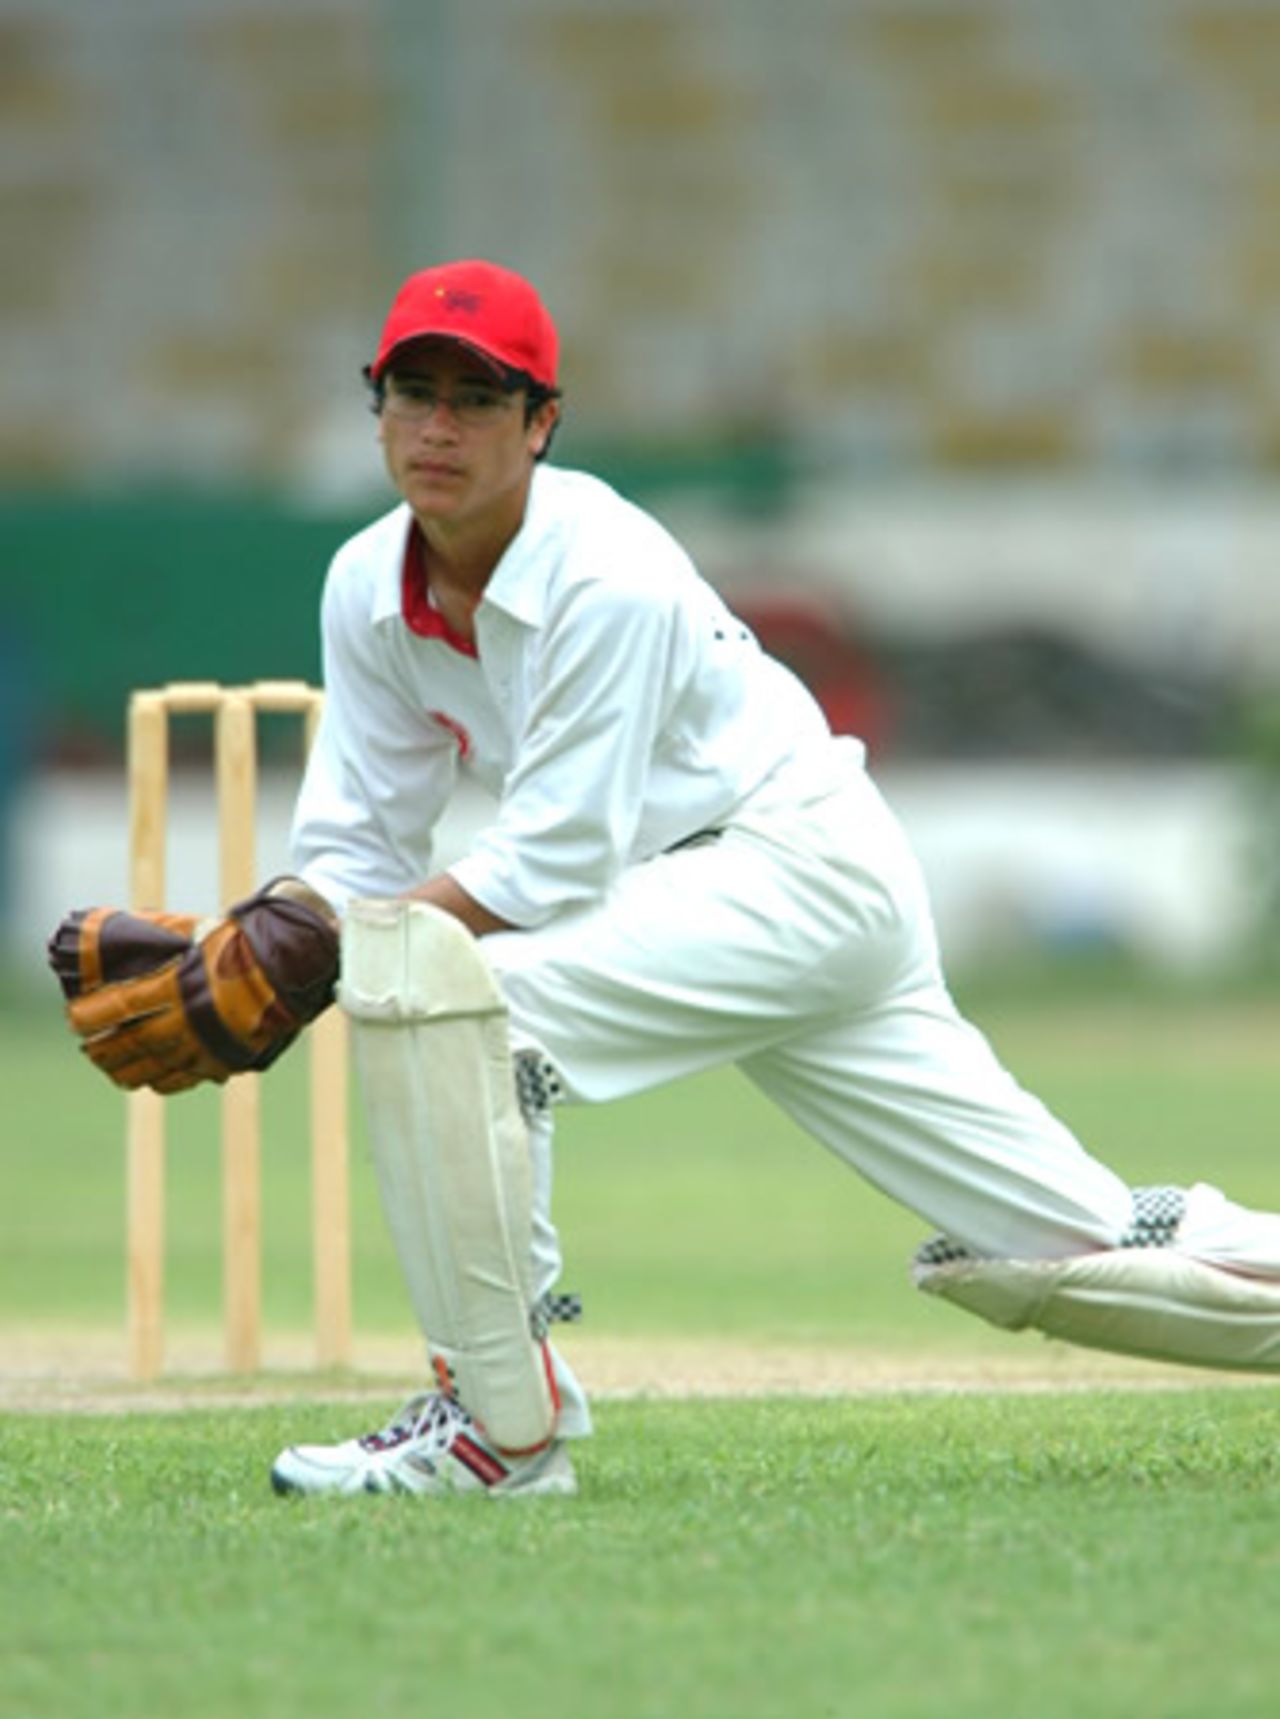 Matthew Lind Hong Kong wicketkeeper saves runs, Hong Kong Under-19s v Thailand Under-19s at National Stadium Karachi, Youth Asia Cup 2003, 21 July 2003.